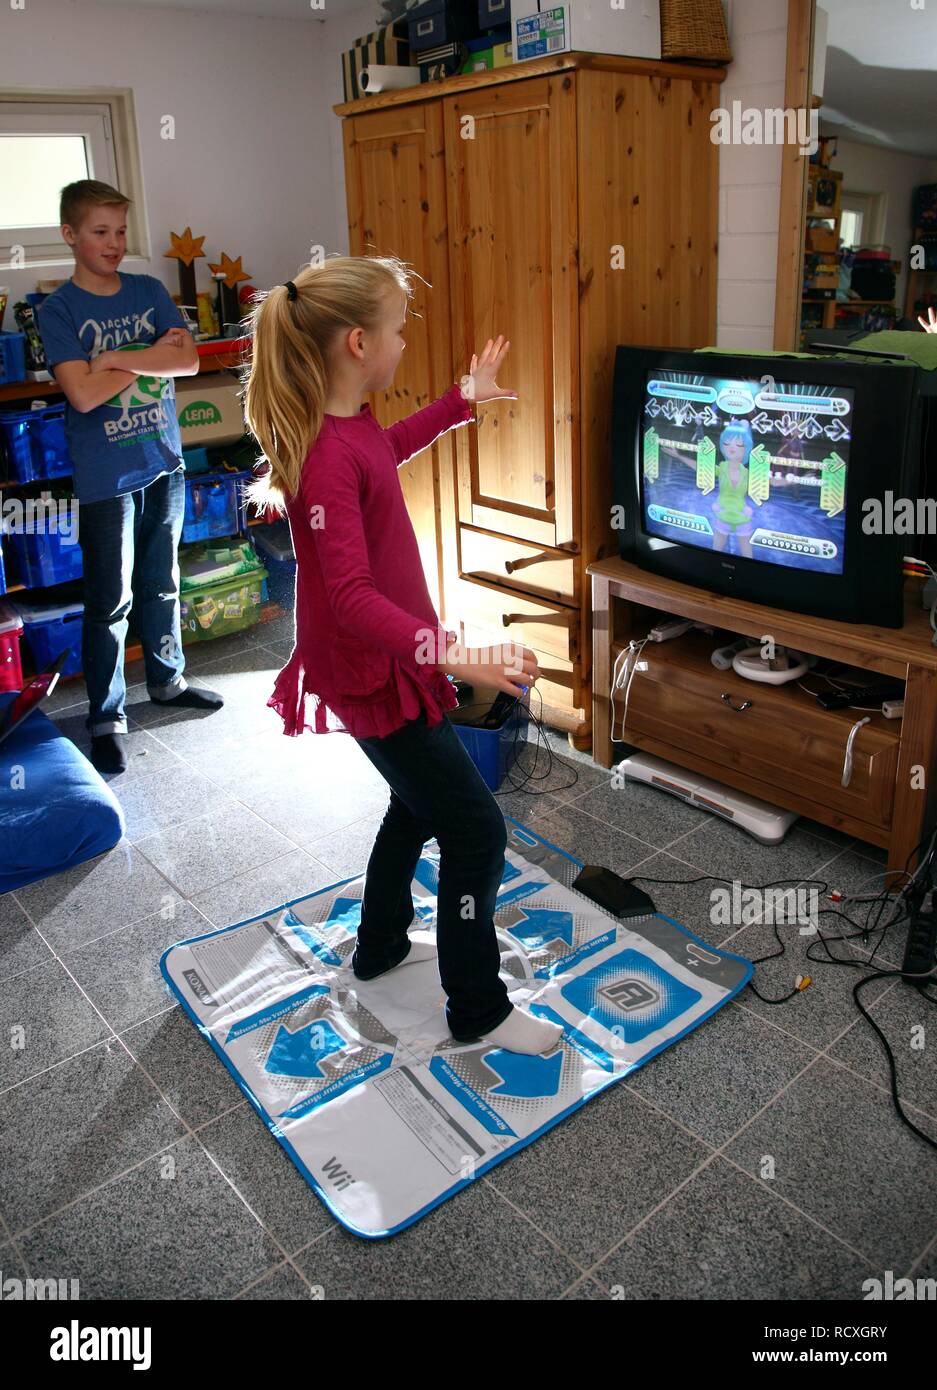 Hermanos, un niño de 12 años, y una niña, de 10 años, jugando un juego de  baile en una consola de juegos Wii en su sala de juntas Fotografía de stock  - Alamy